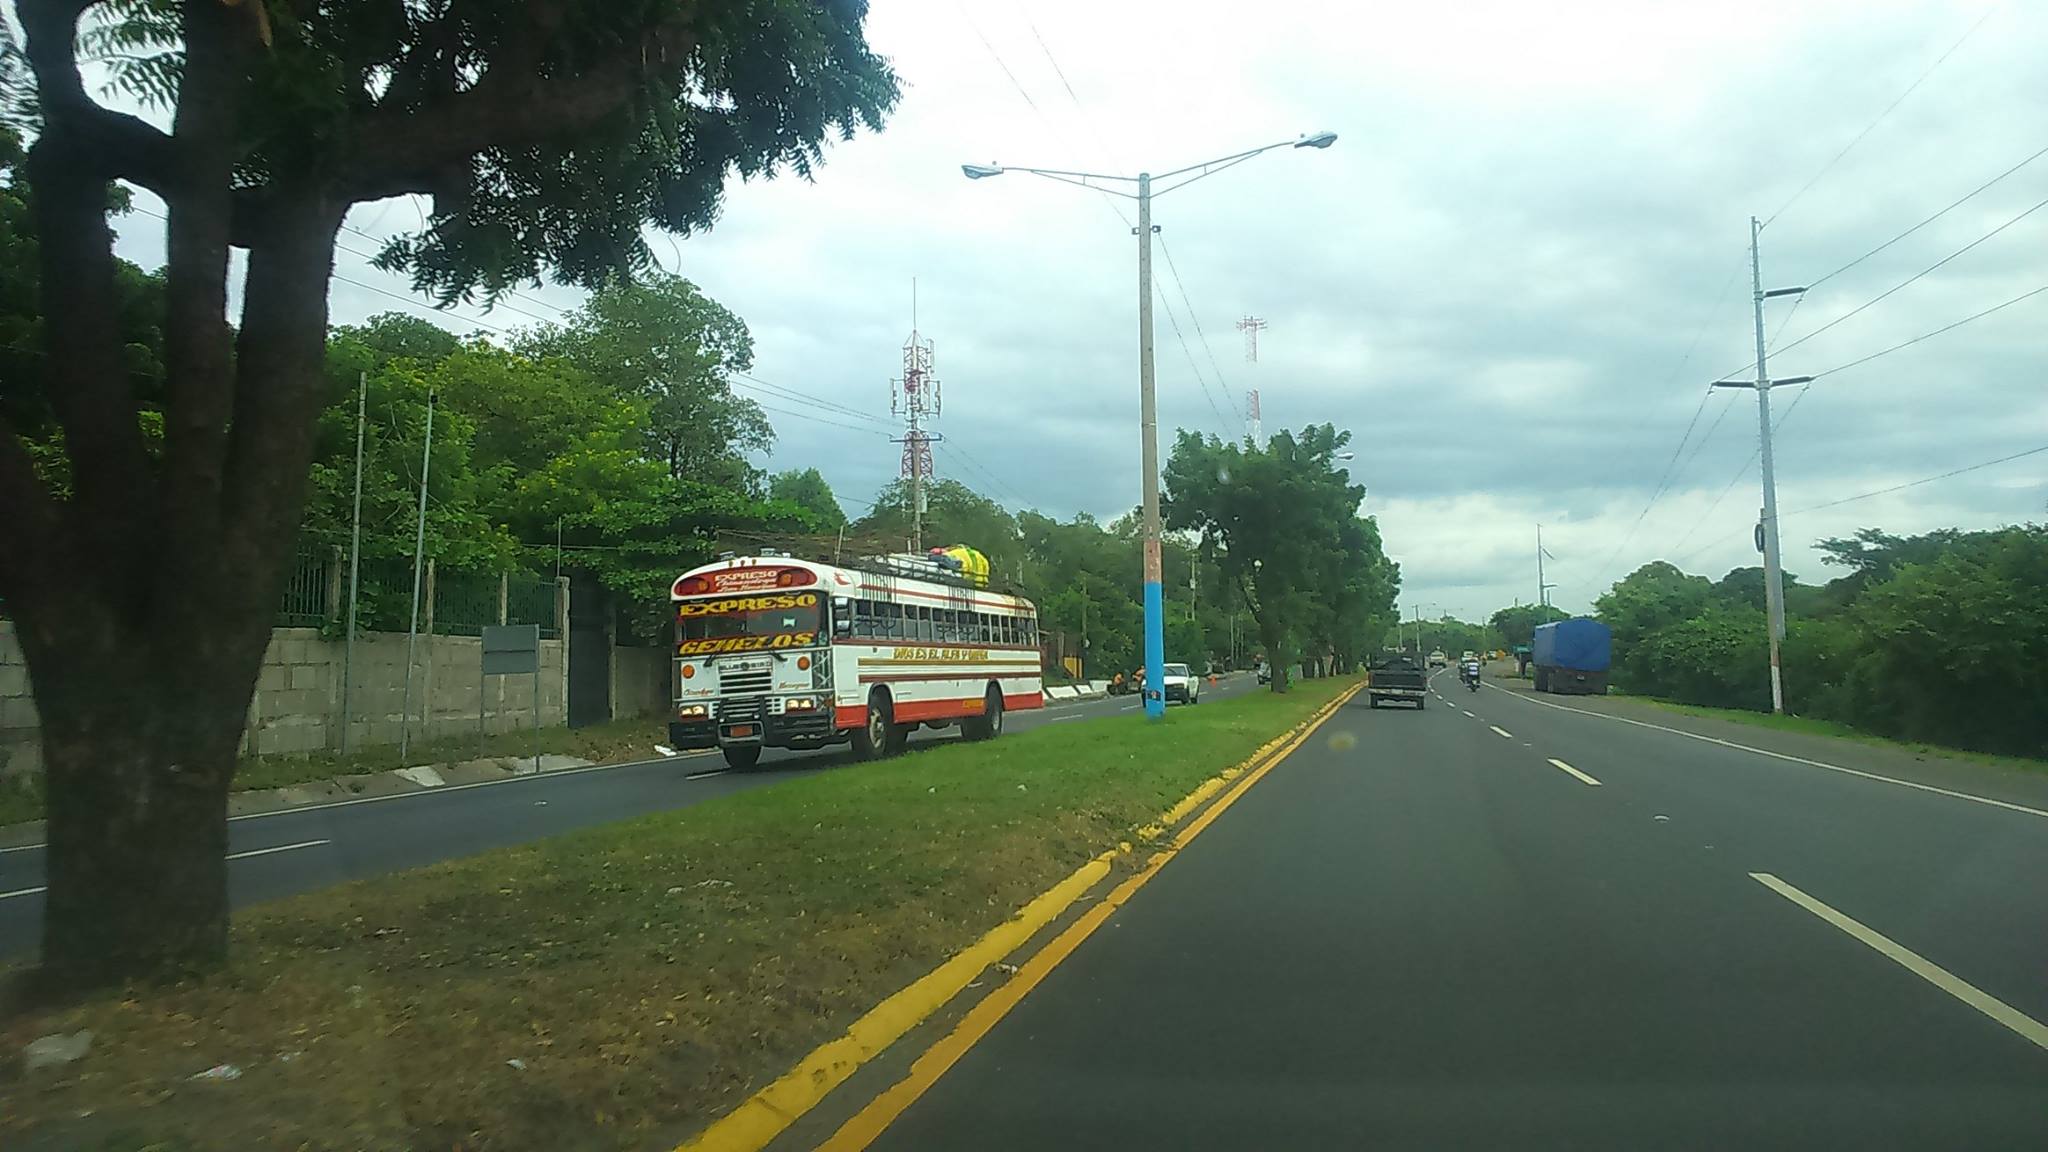 La rutina de viajar diariamente a trabajar a Managua